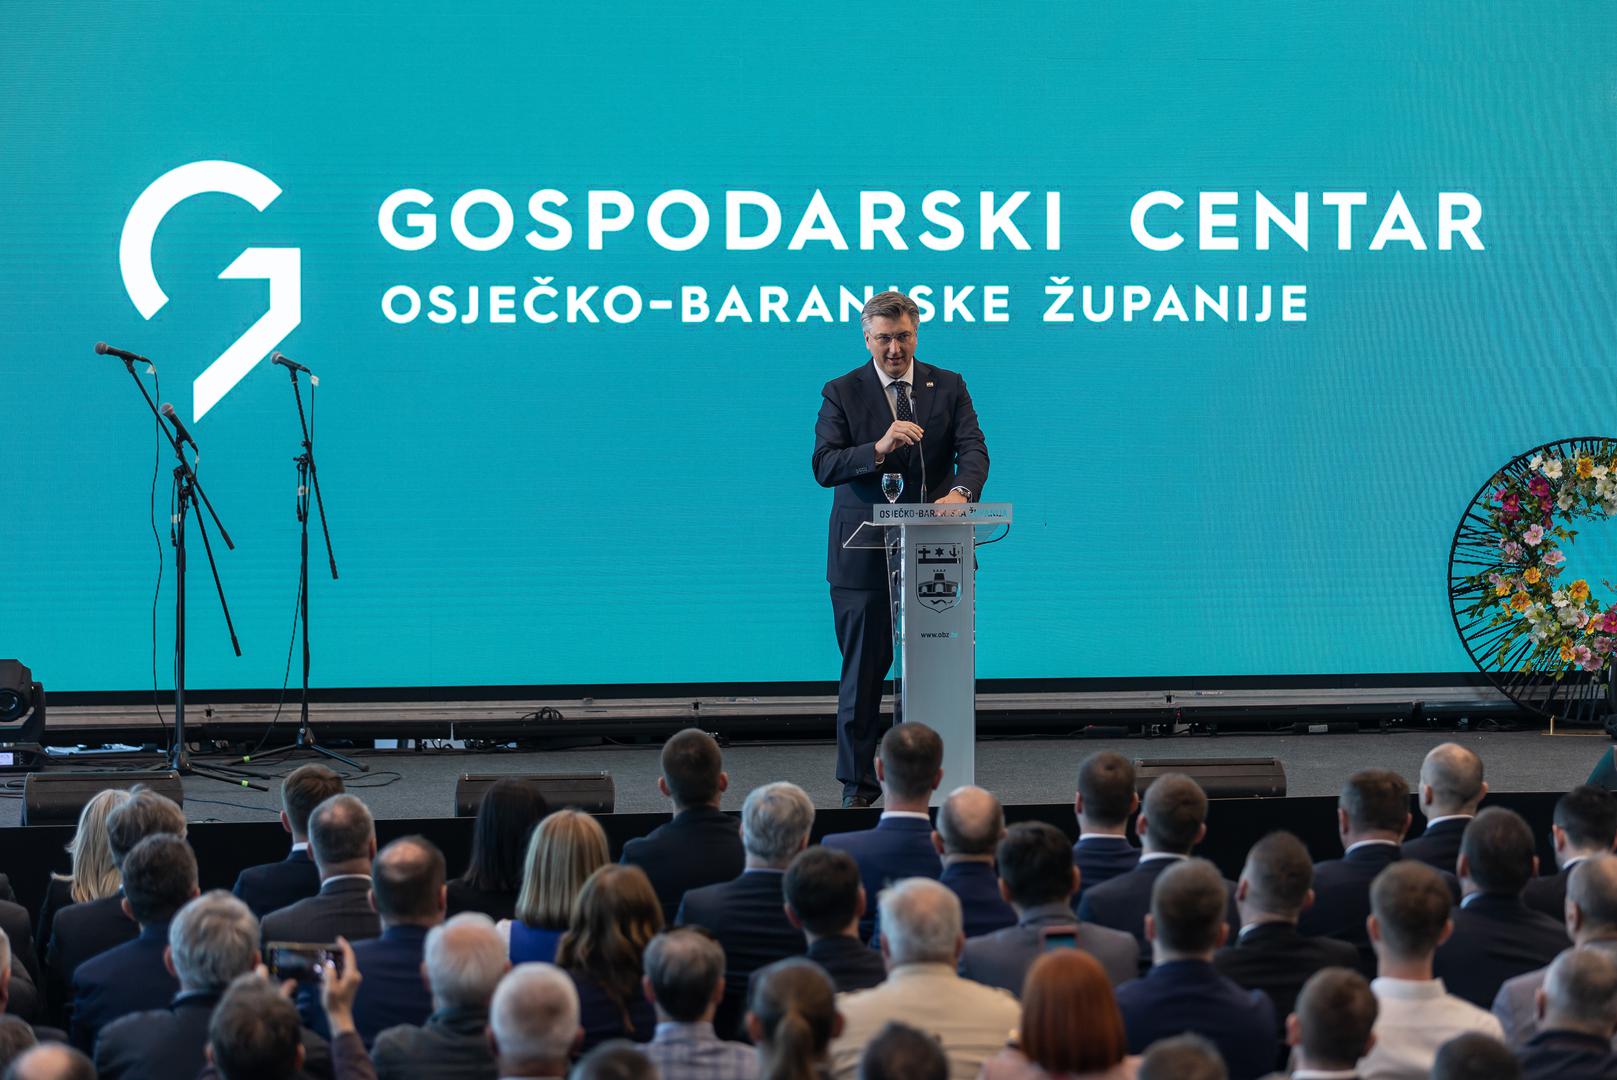 21.04.2023., Osijek - Predsjednik Vlade Andrej Plenkovic sudjelovao je na svecanosti otvorenja Gospodarskog centra Osjecko-baranjske zupanije i Proljetnog sajma. Photo: Davor Javorovic/PIXSELL